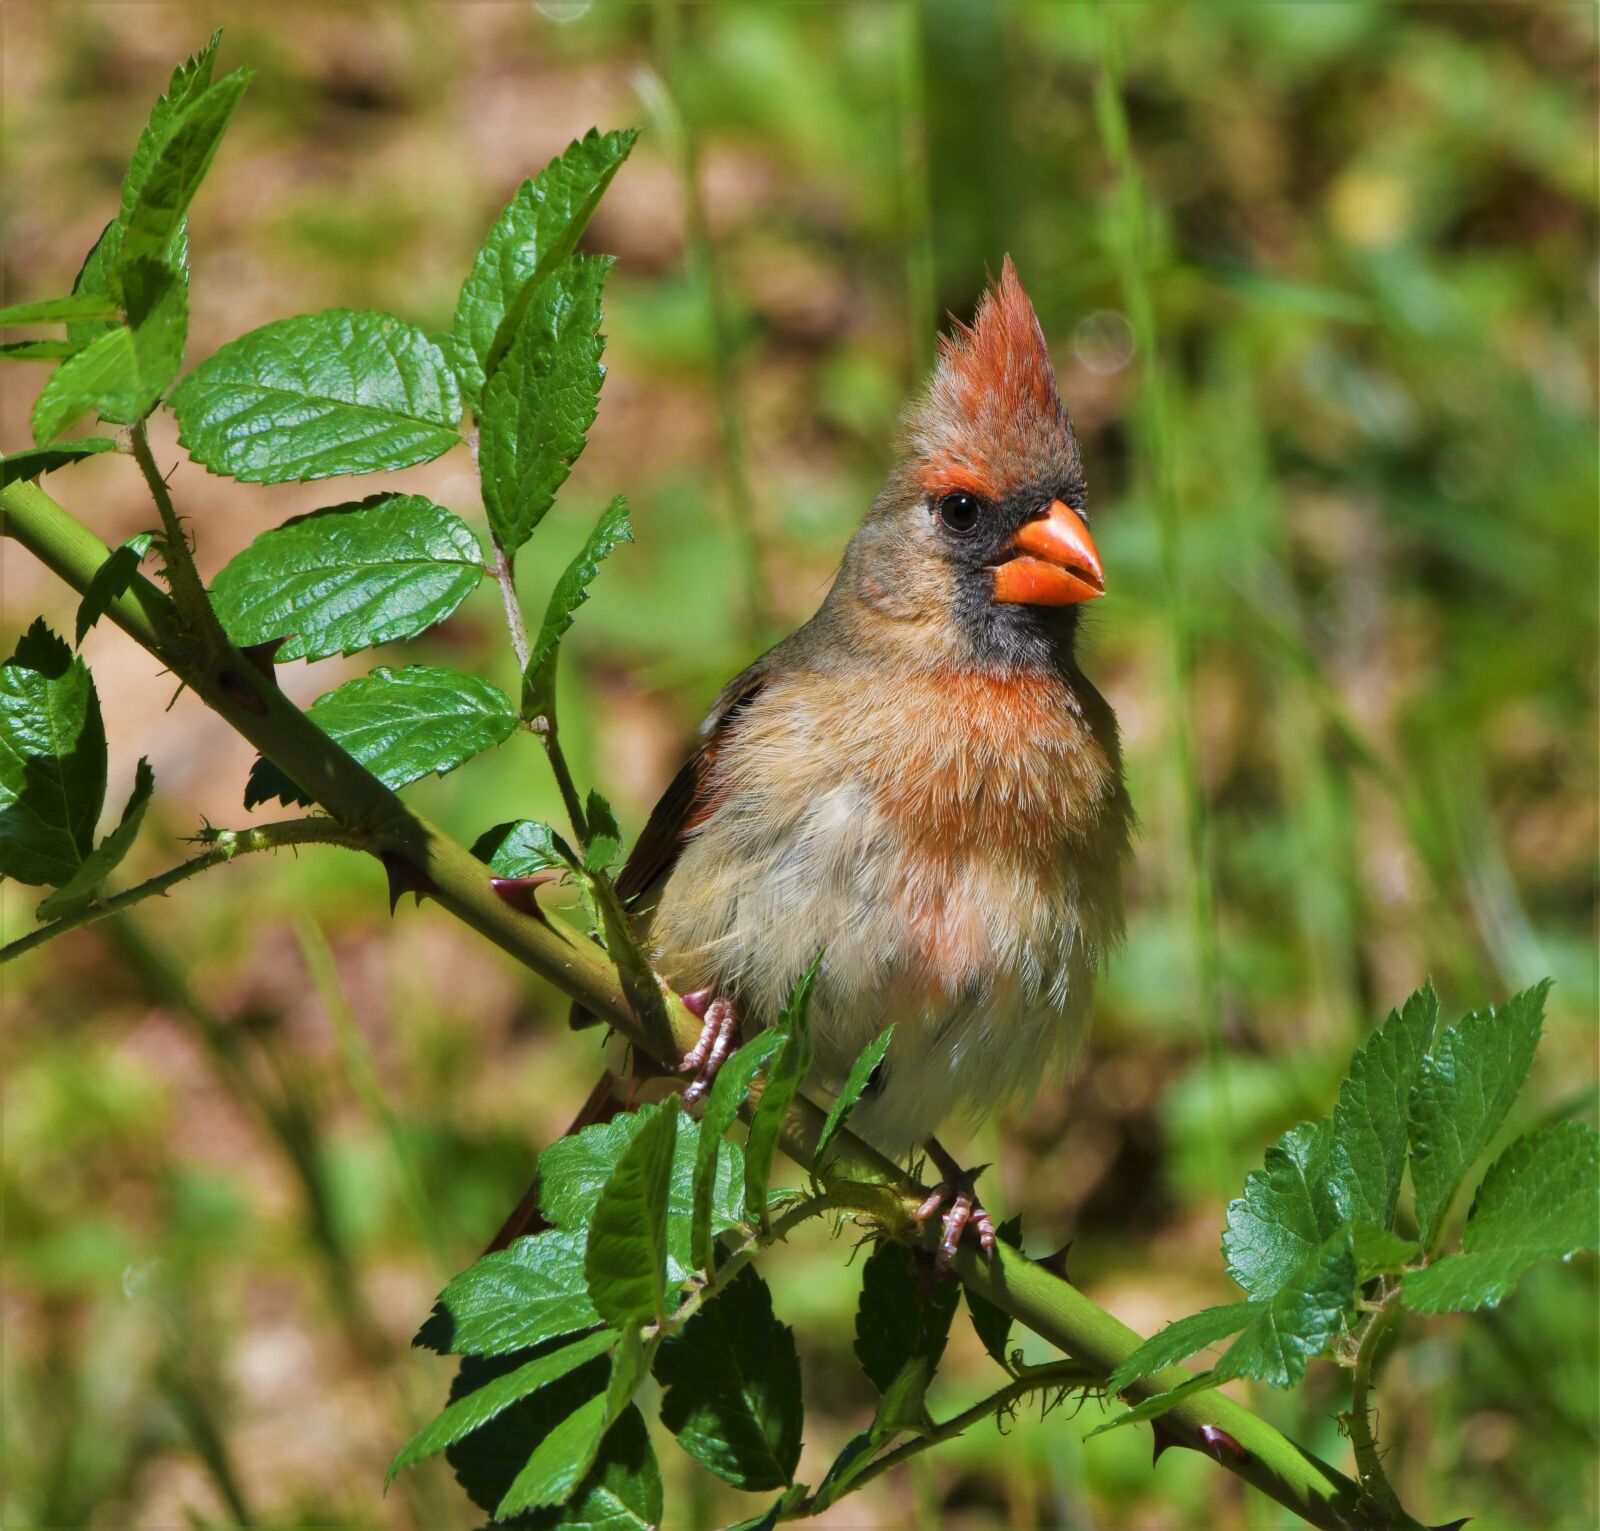 Nikon D850 sample photo. Bird, redbird, cardinal photography